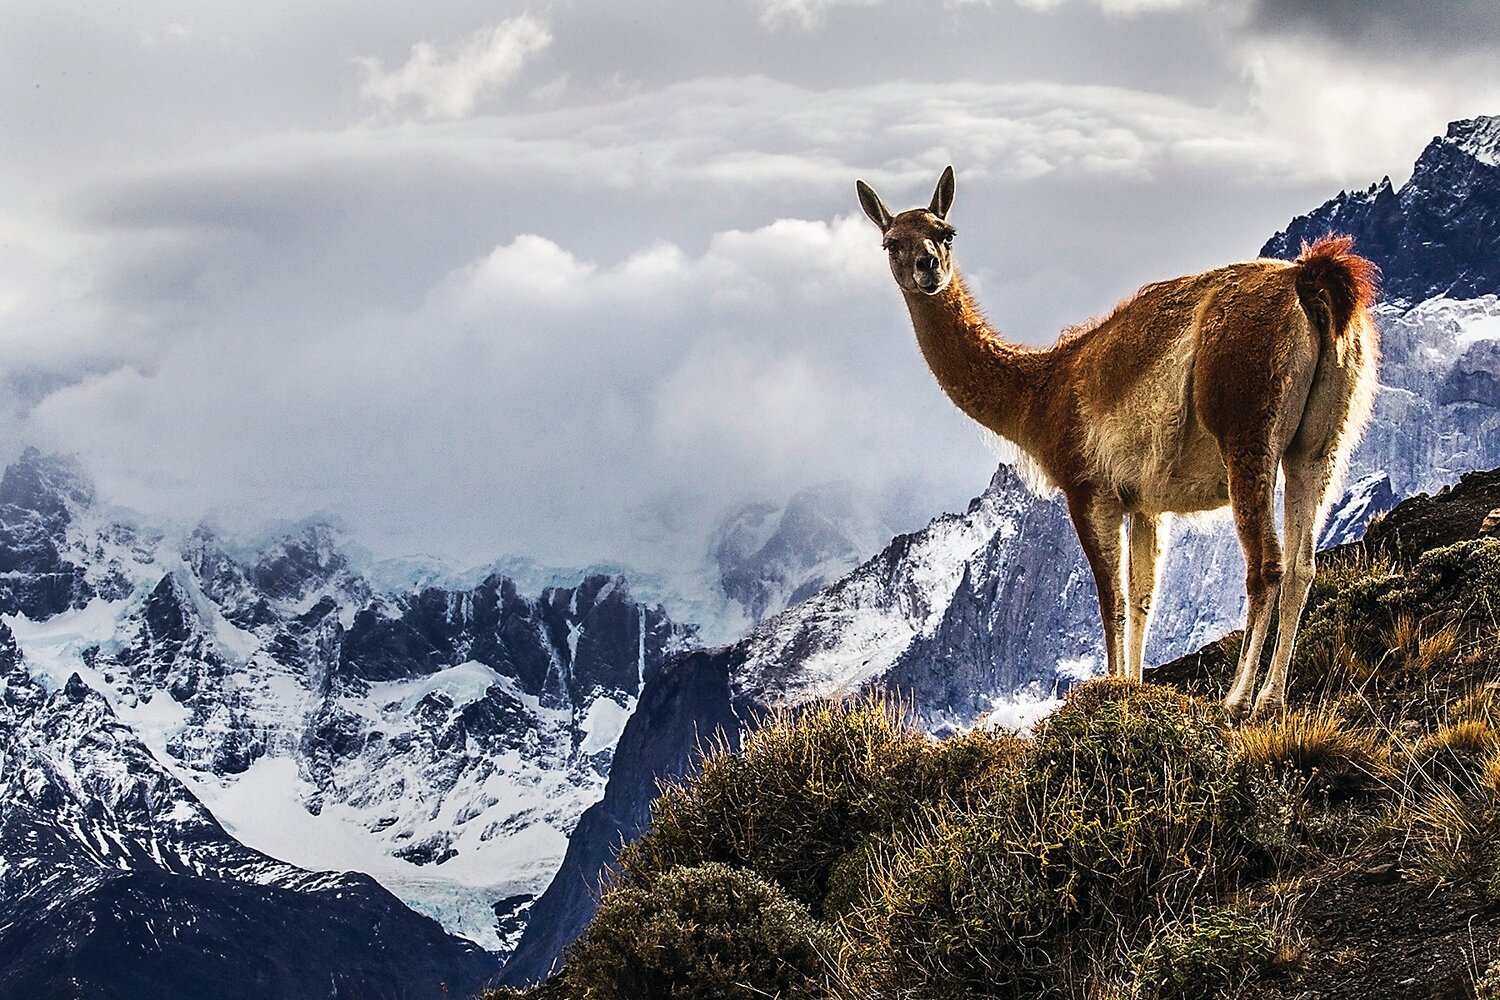 “Guanaco (Lama Guanicoe) Chile Patagonia” is a photograph by Ilya Raskin.